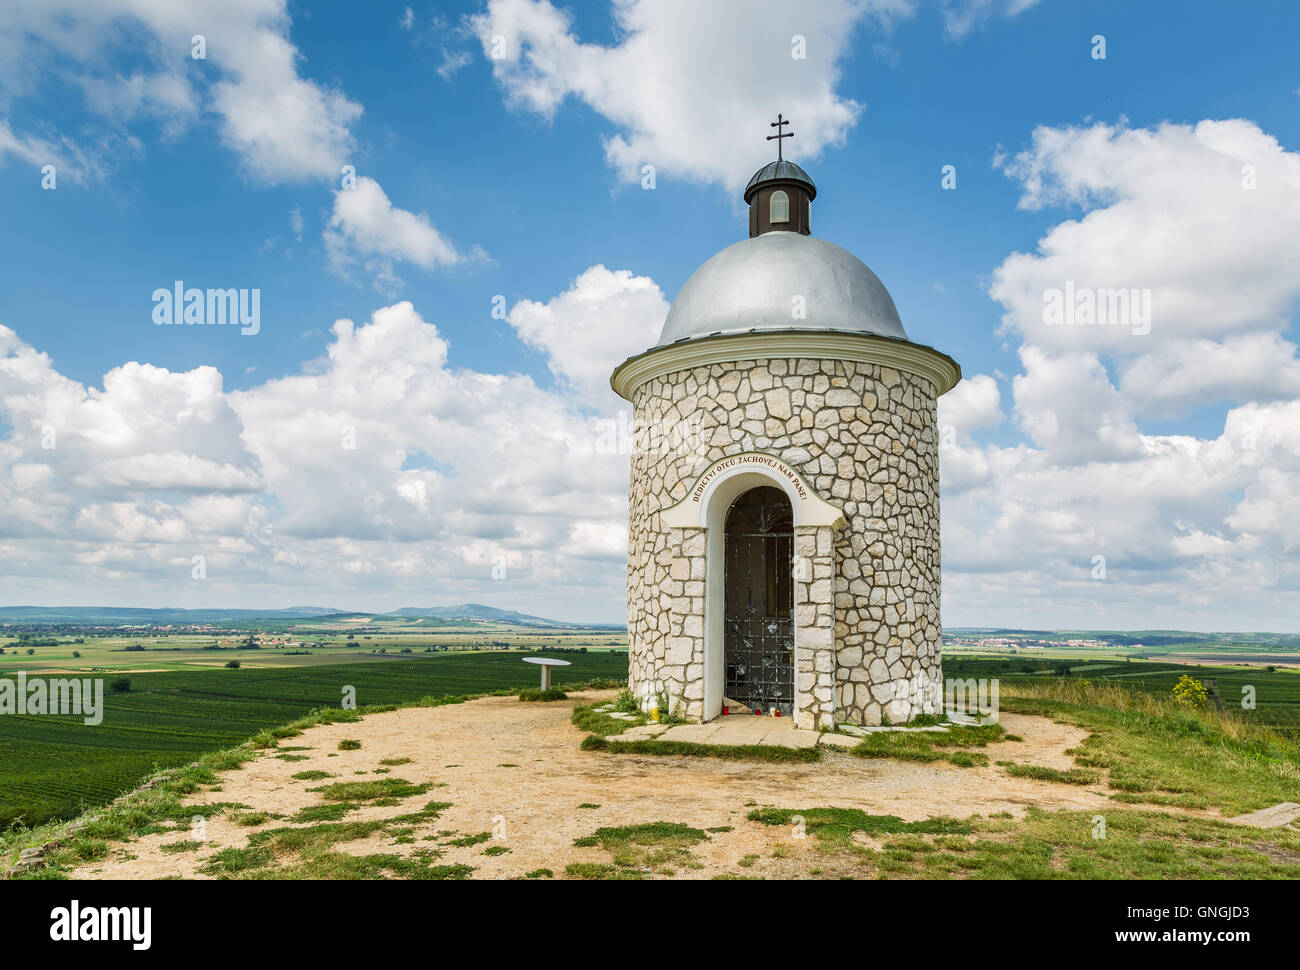 Hradistek chapel on a hill in the wine village Velke Pavlovice, Moravia, Czech Republic Stock Photo